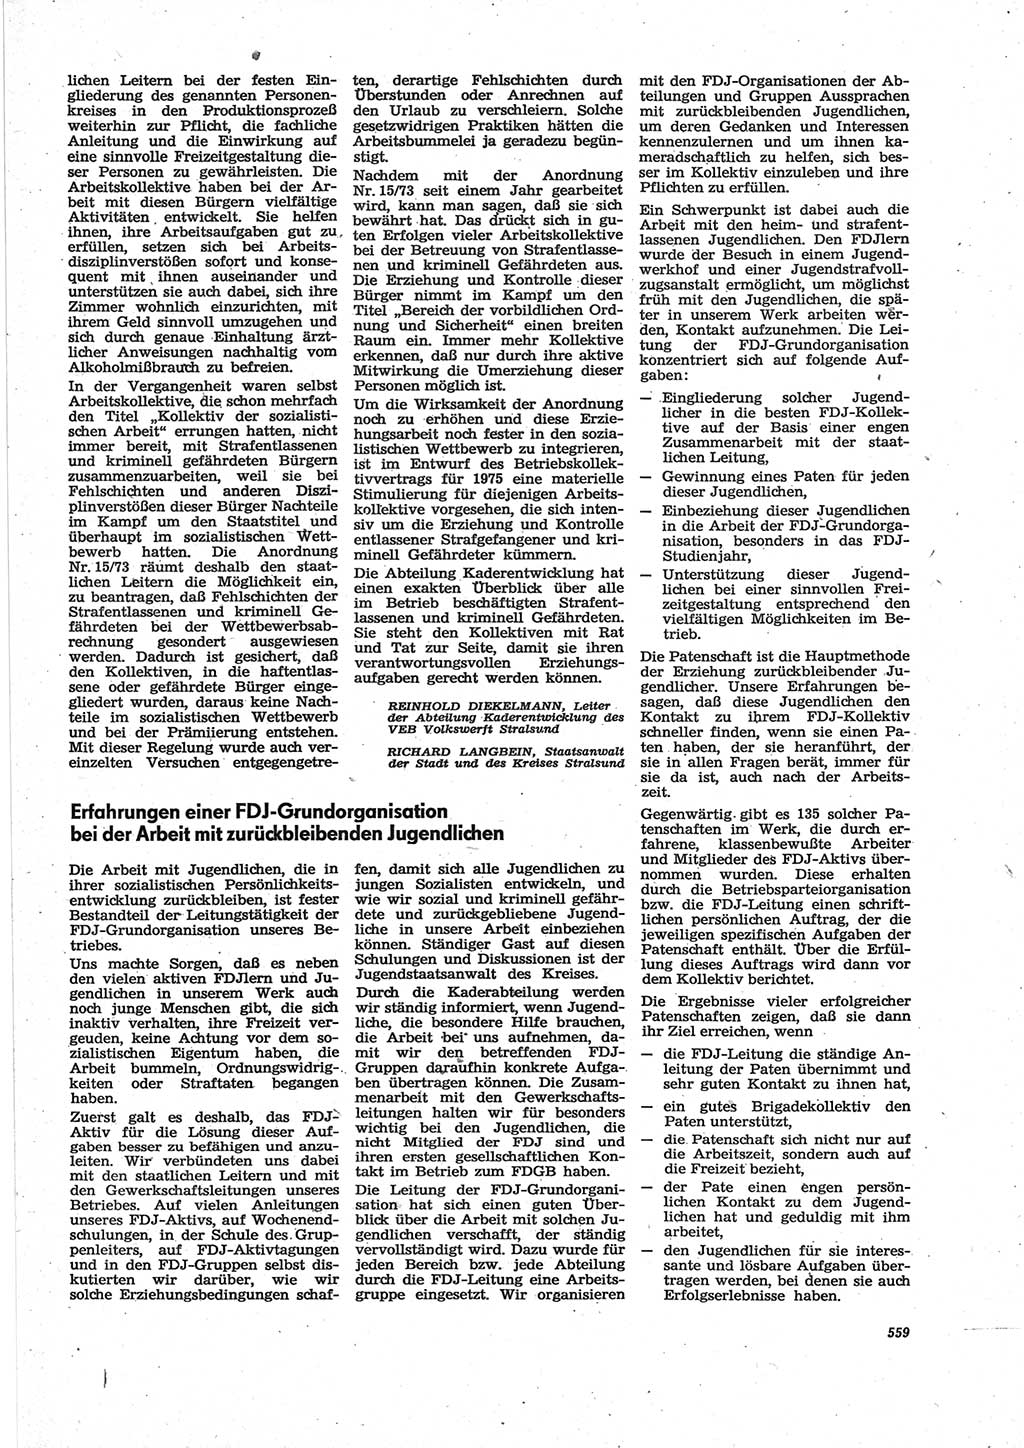 Neue Justiz (NJ), Zeitschrift für Recht und Rechtswissenschaft [Deutsche Demokratische Republik (DDR)], 28. Jahrgang 1974, Seite 559 (NJ DDR 1974, S. 559)